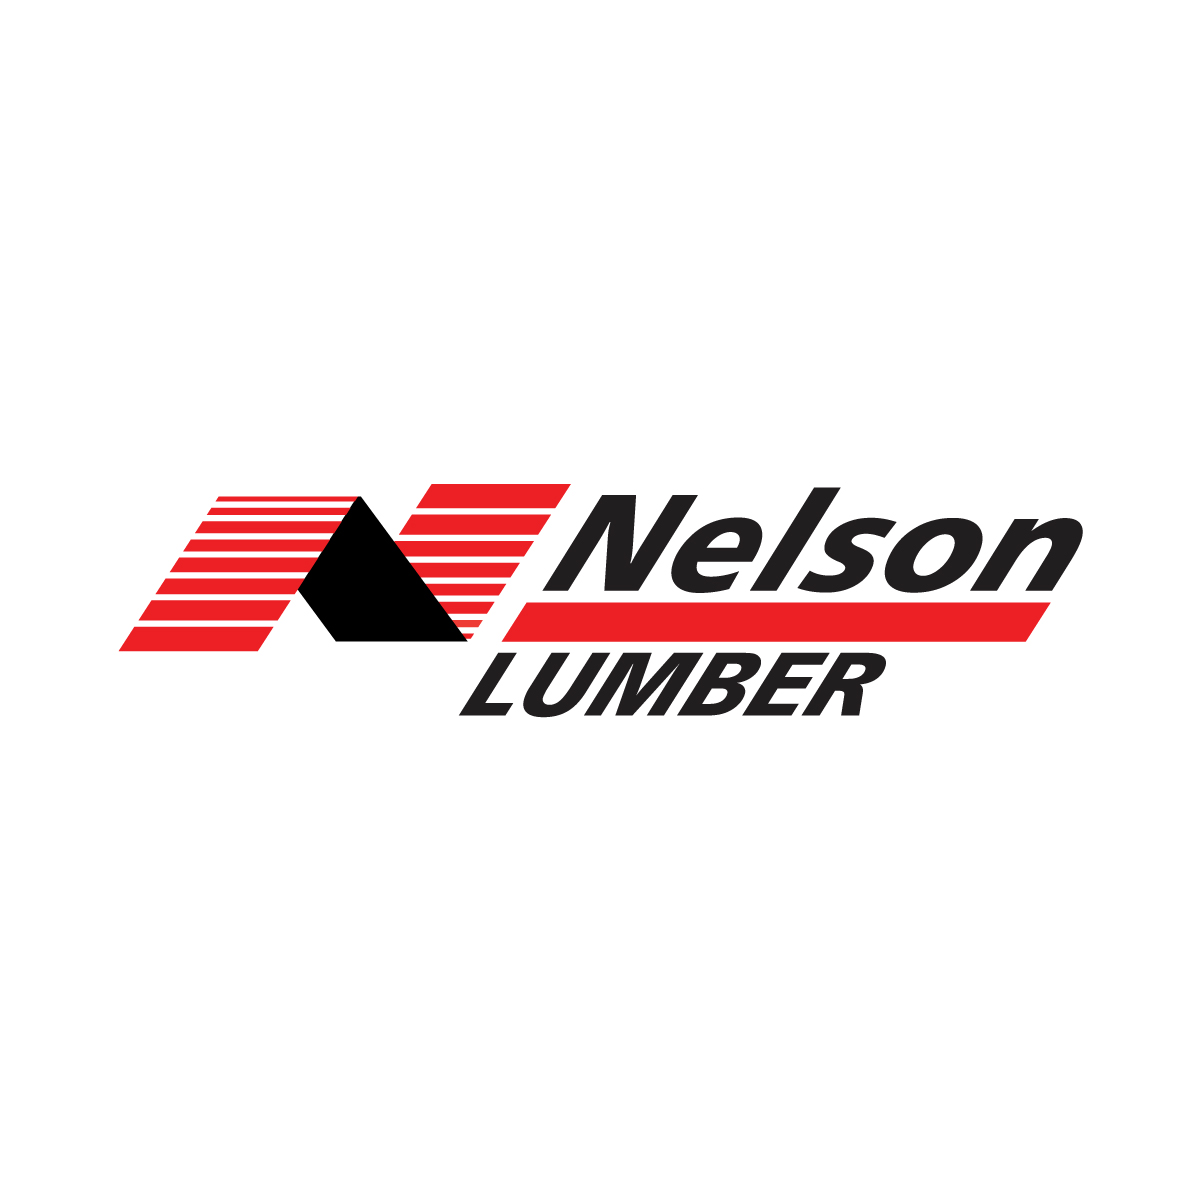 (c) Lumber.nlc.ca